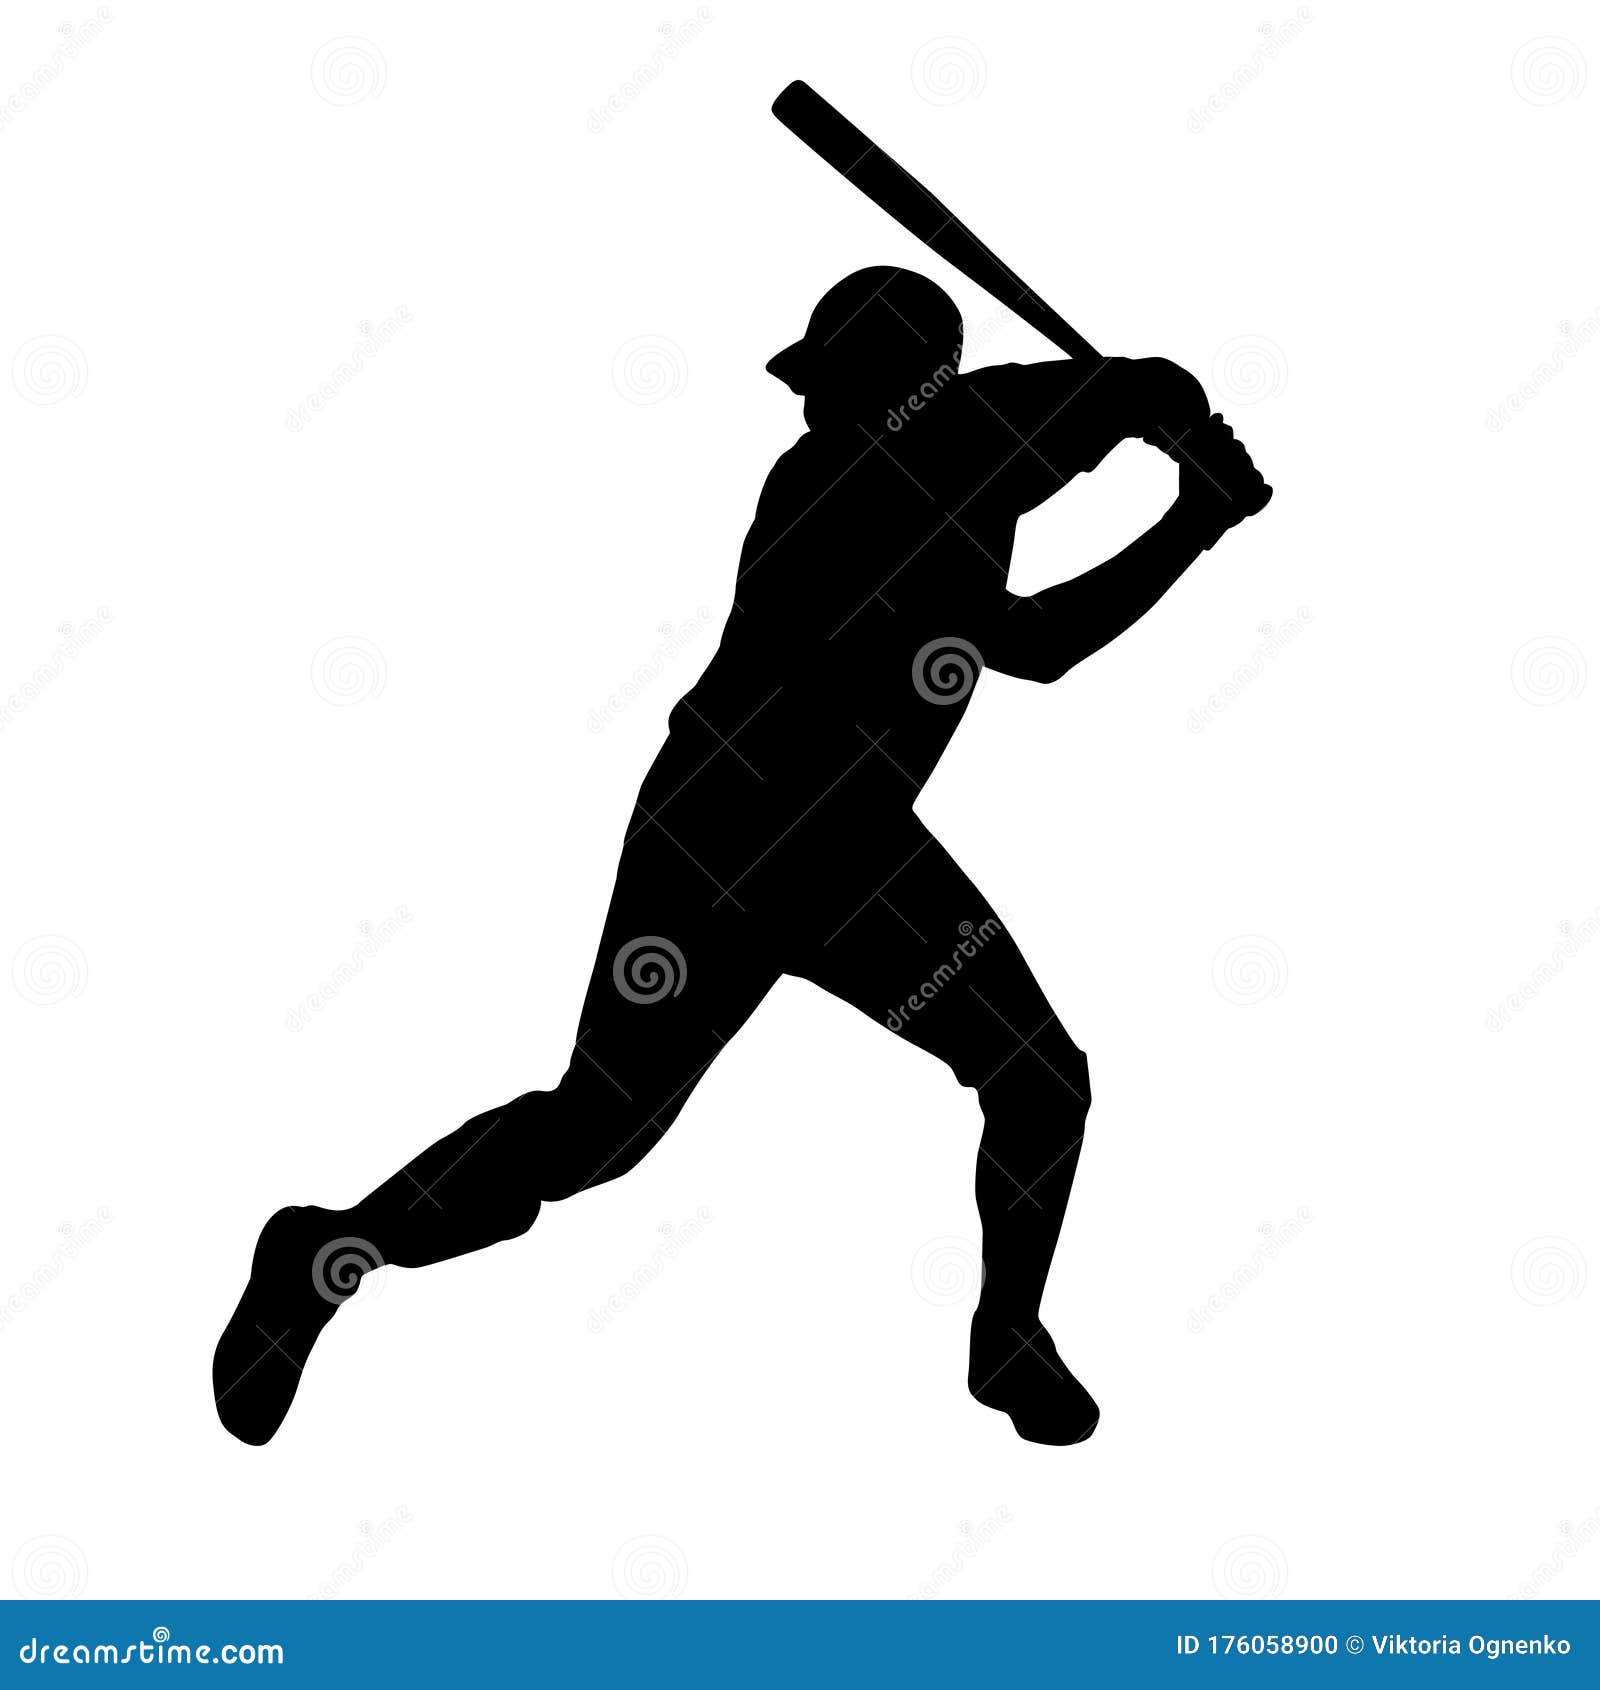 Baseball Batter silhouette stock photo. Illustration of wave - 176058900